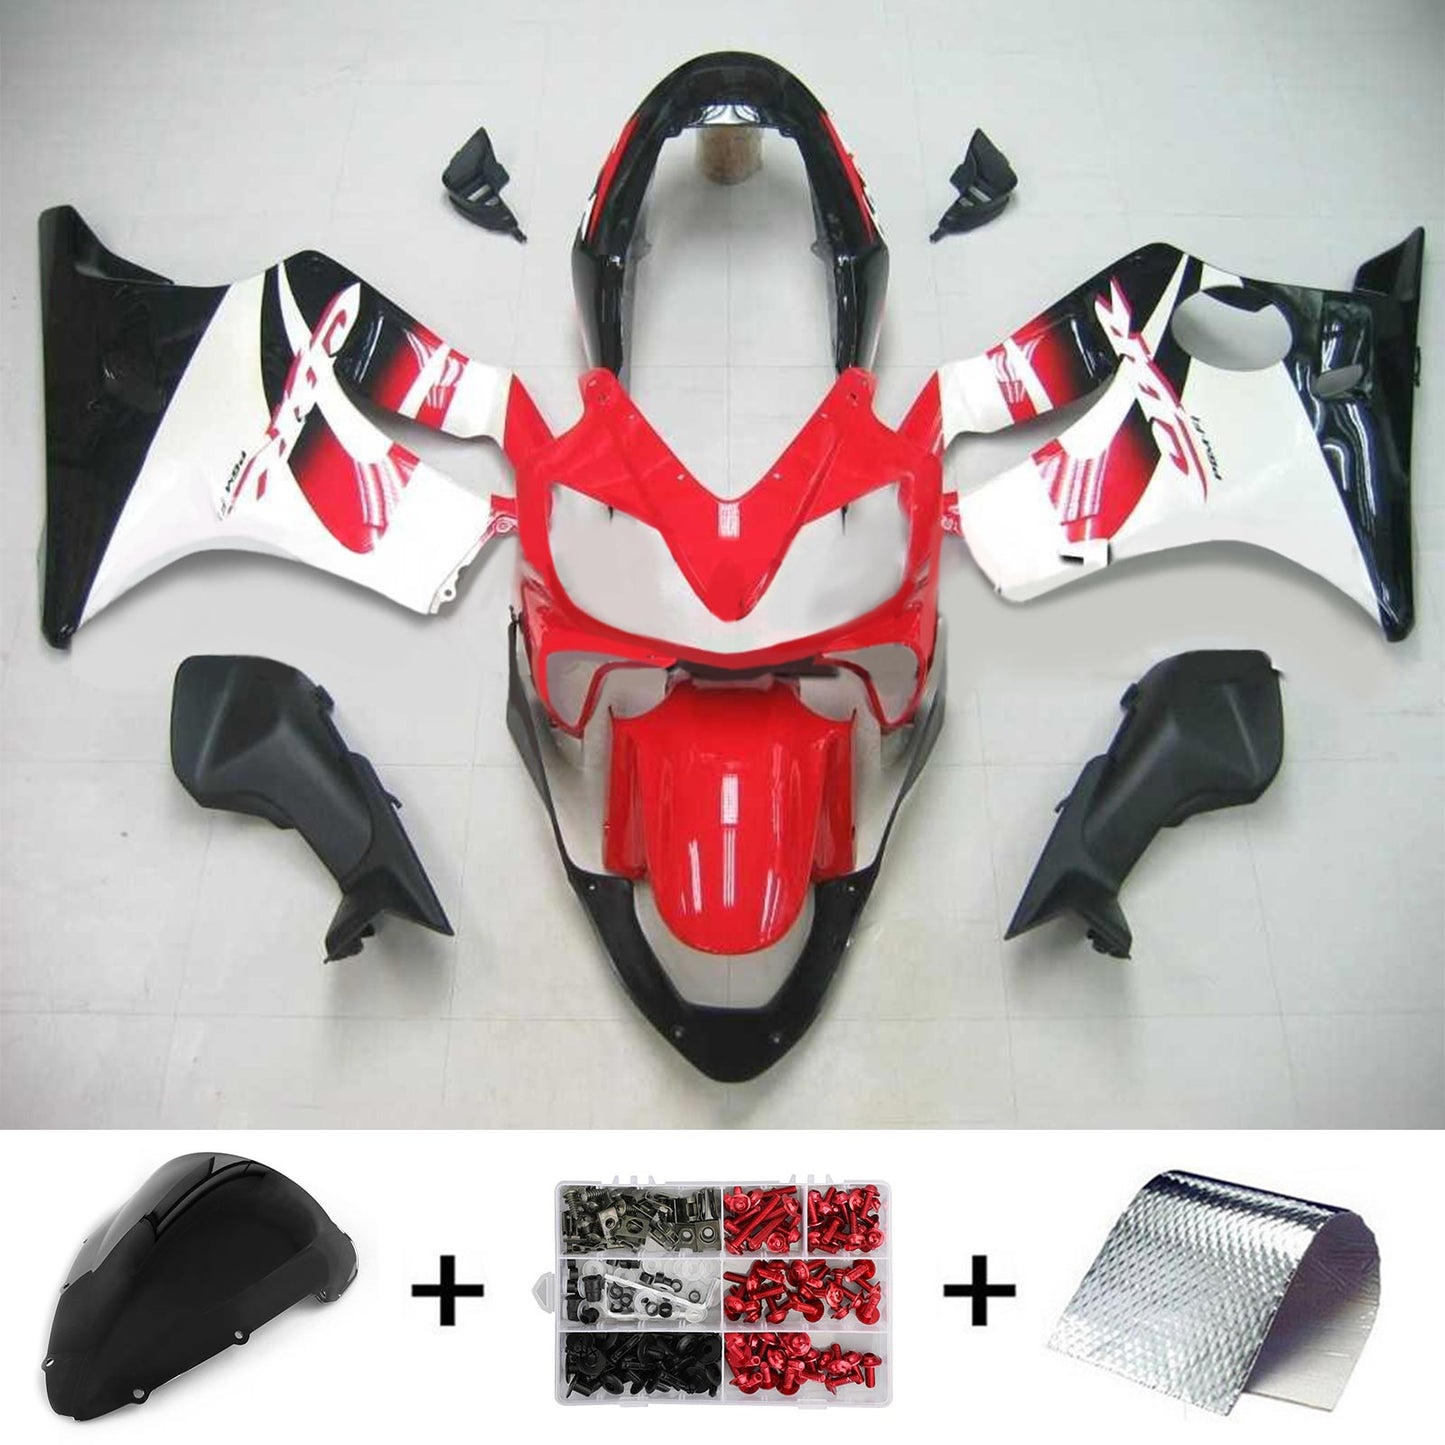 2004-2007 Honda CBR600 F4i Amotopart Injection Fairing Kit Bodywork Plastic ABS #114